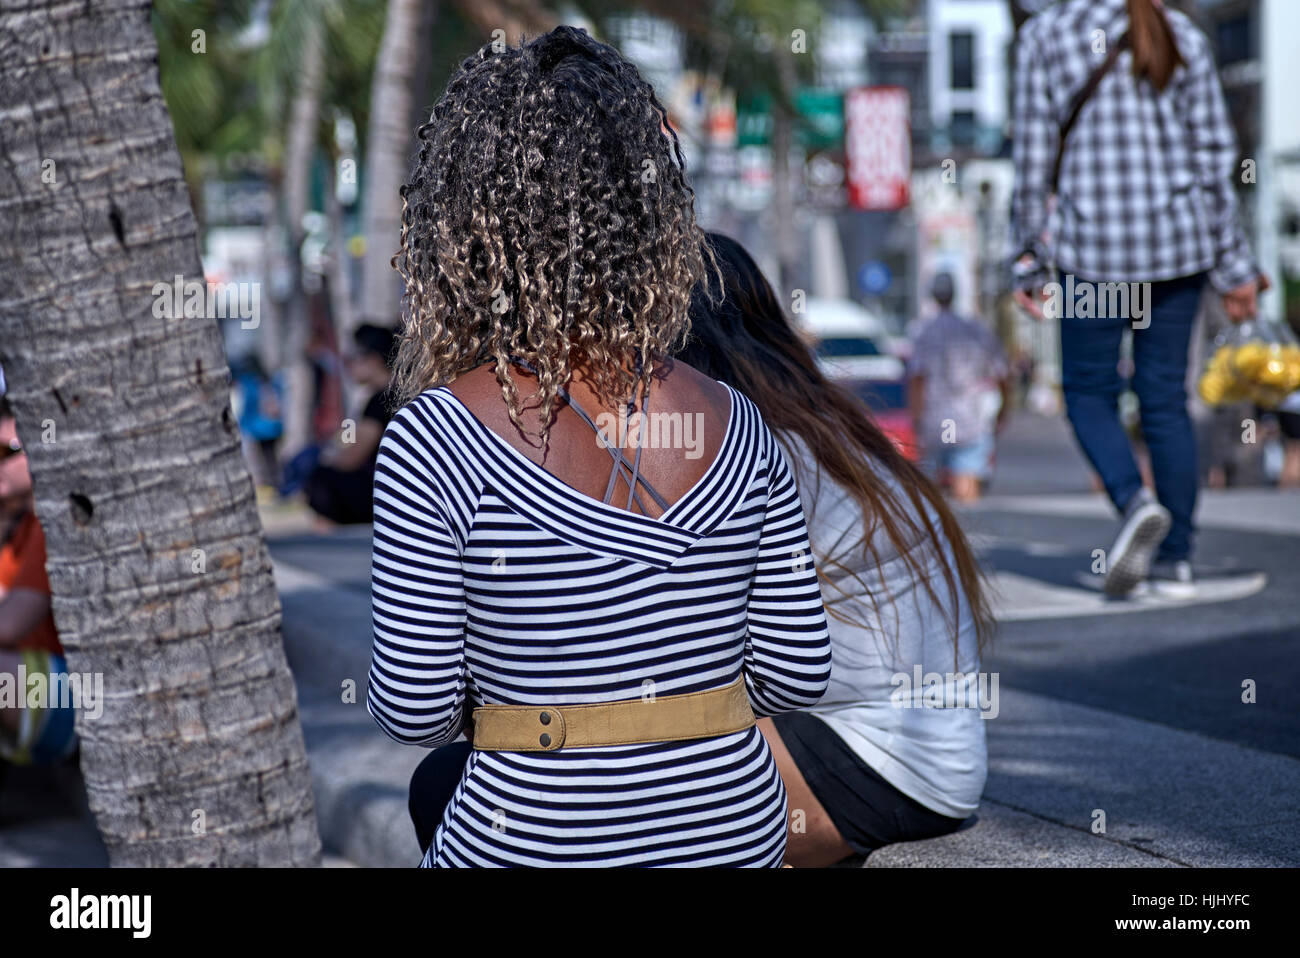 Haare. Frau mit einer krauses afro karibischen Frisur. Stockfoto